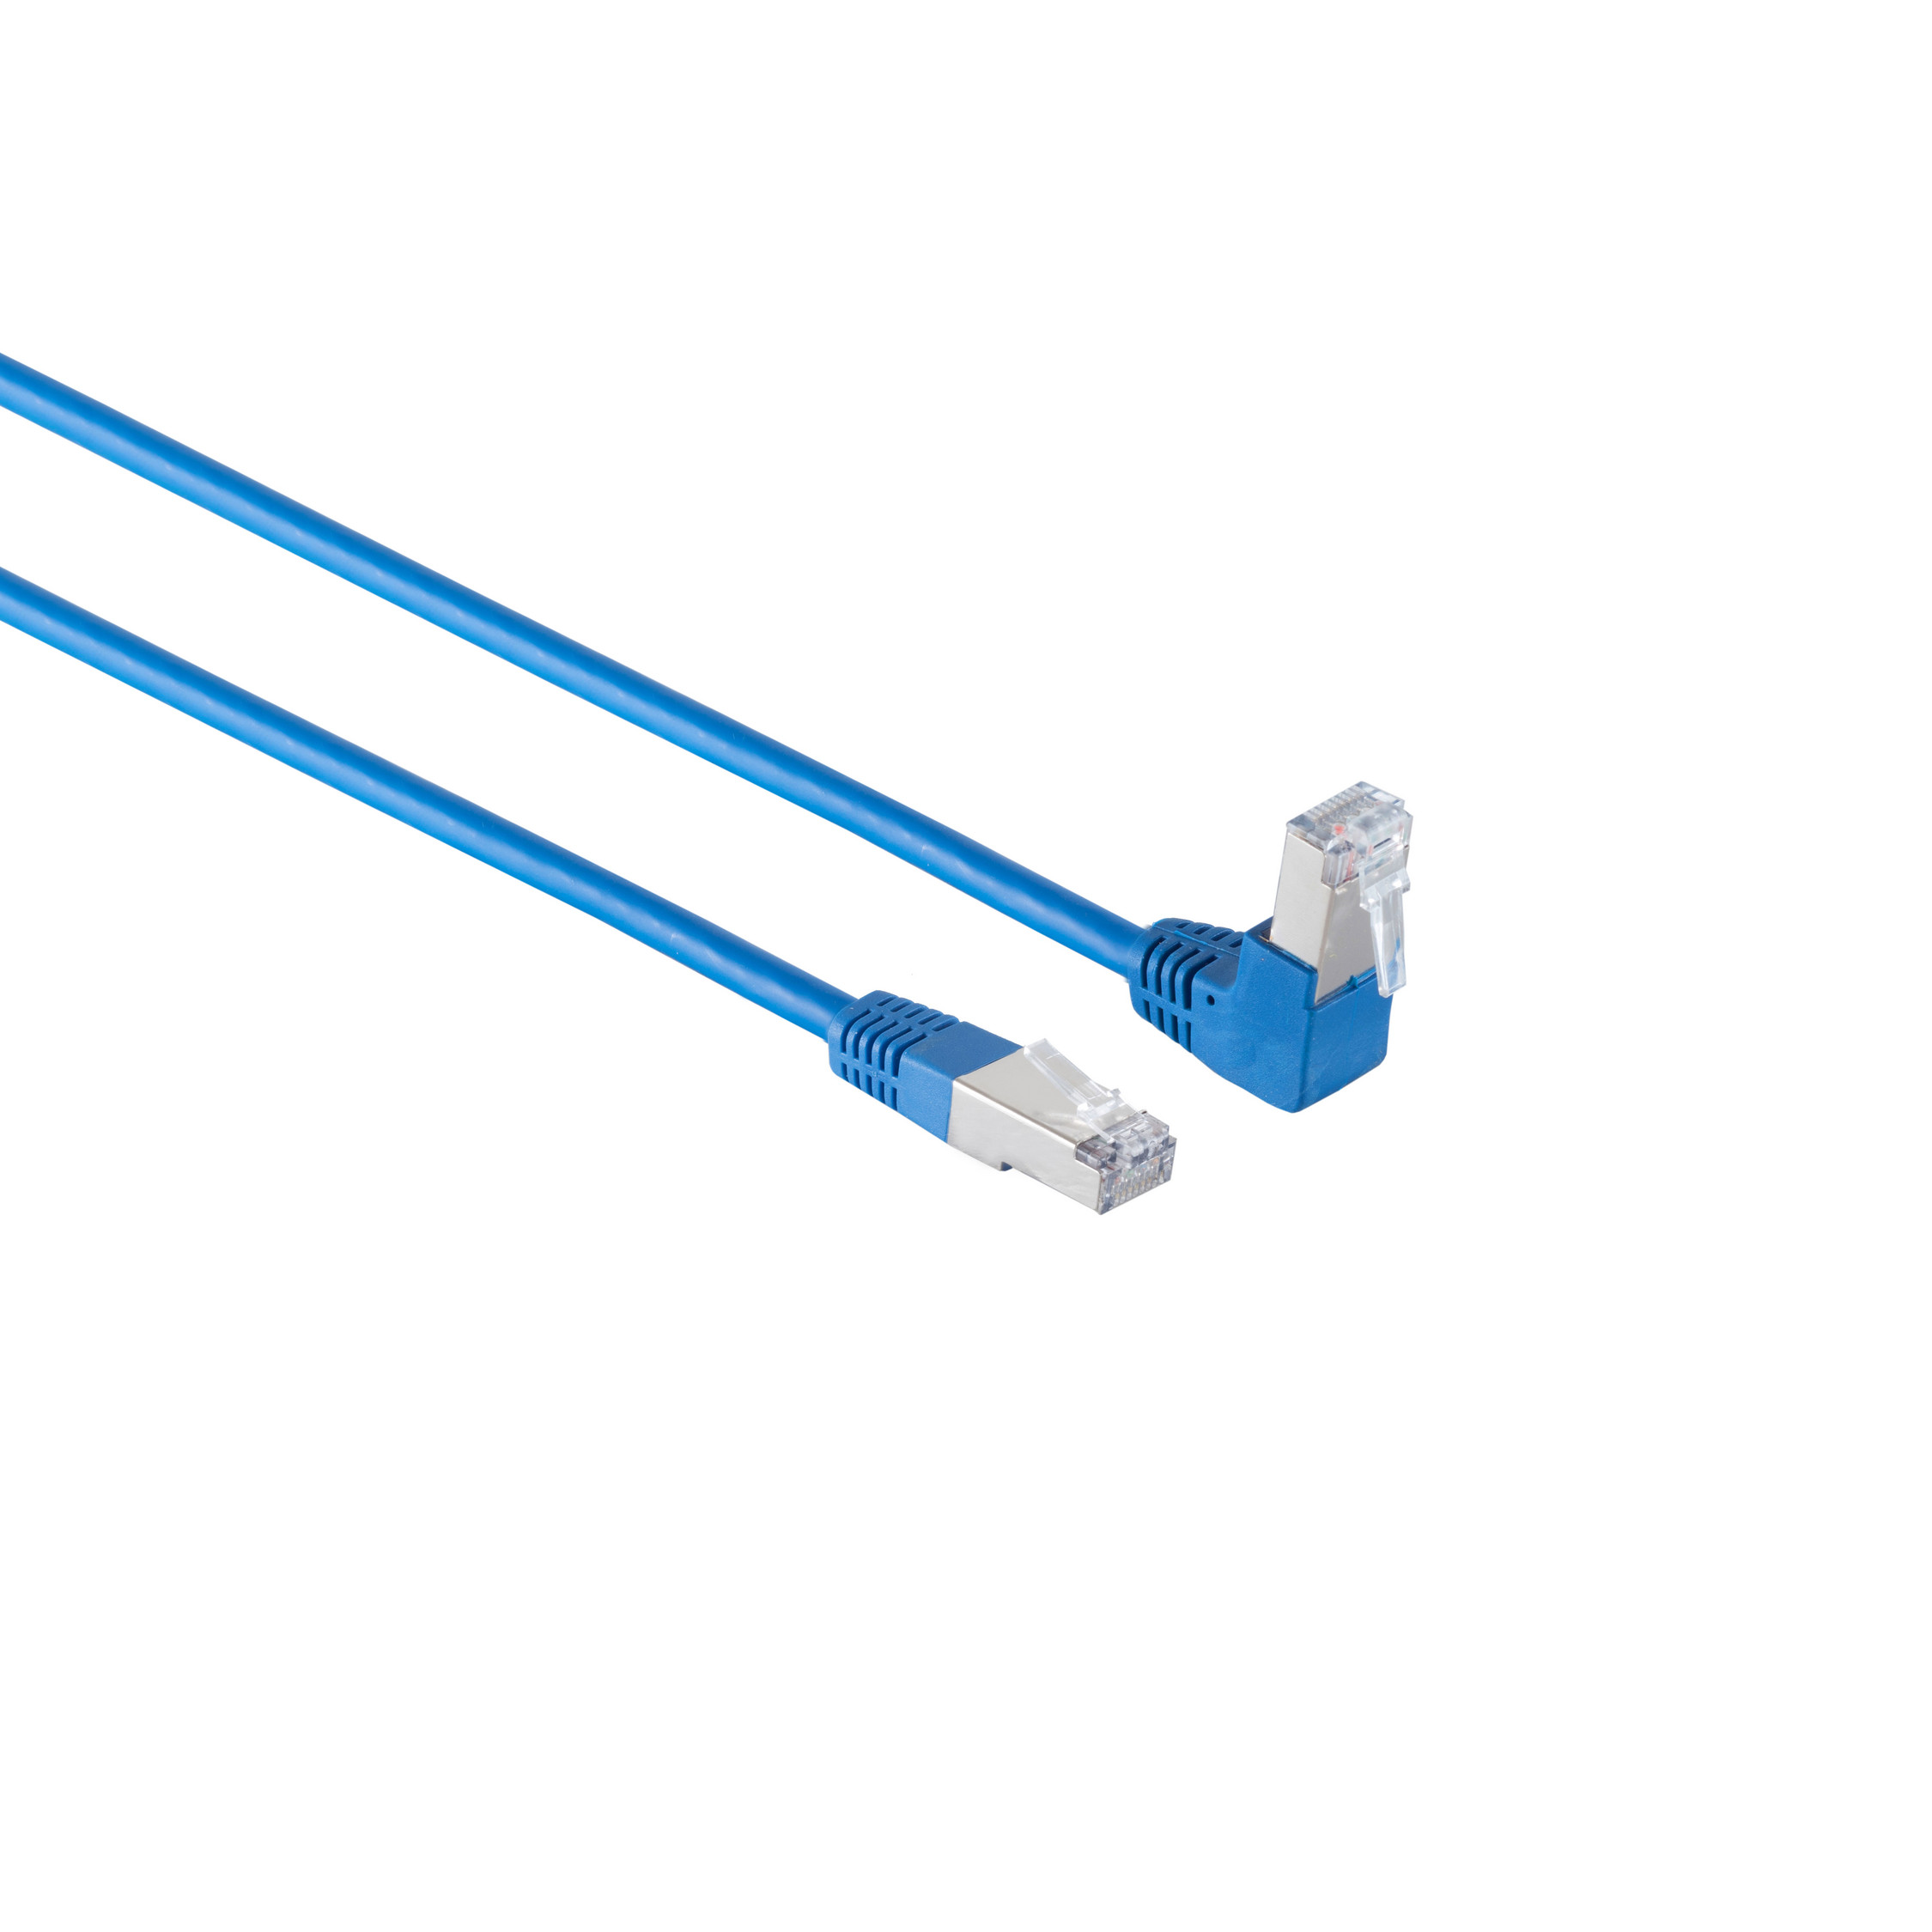 KABELBUDE Kabel cat 6 0,5m, m blau 0,50 Winkel-gerade Patchkabel S/FTP PIMF RJ45